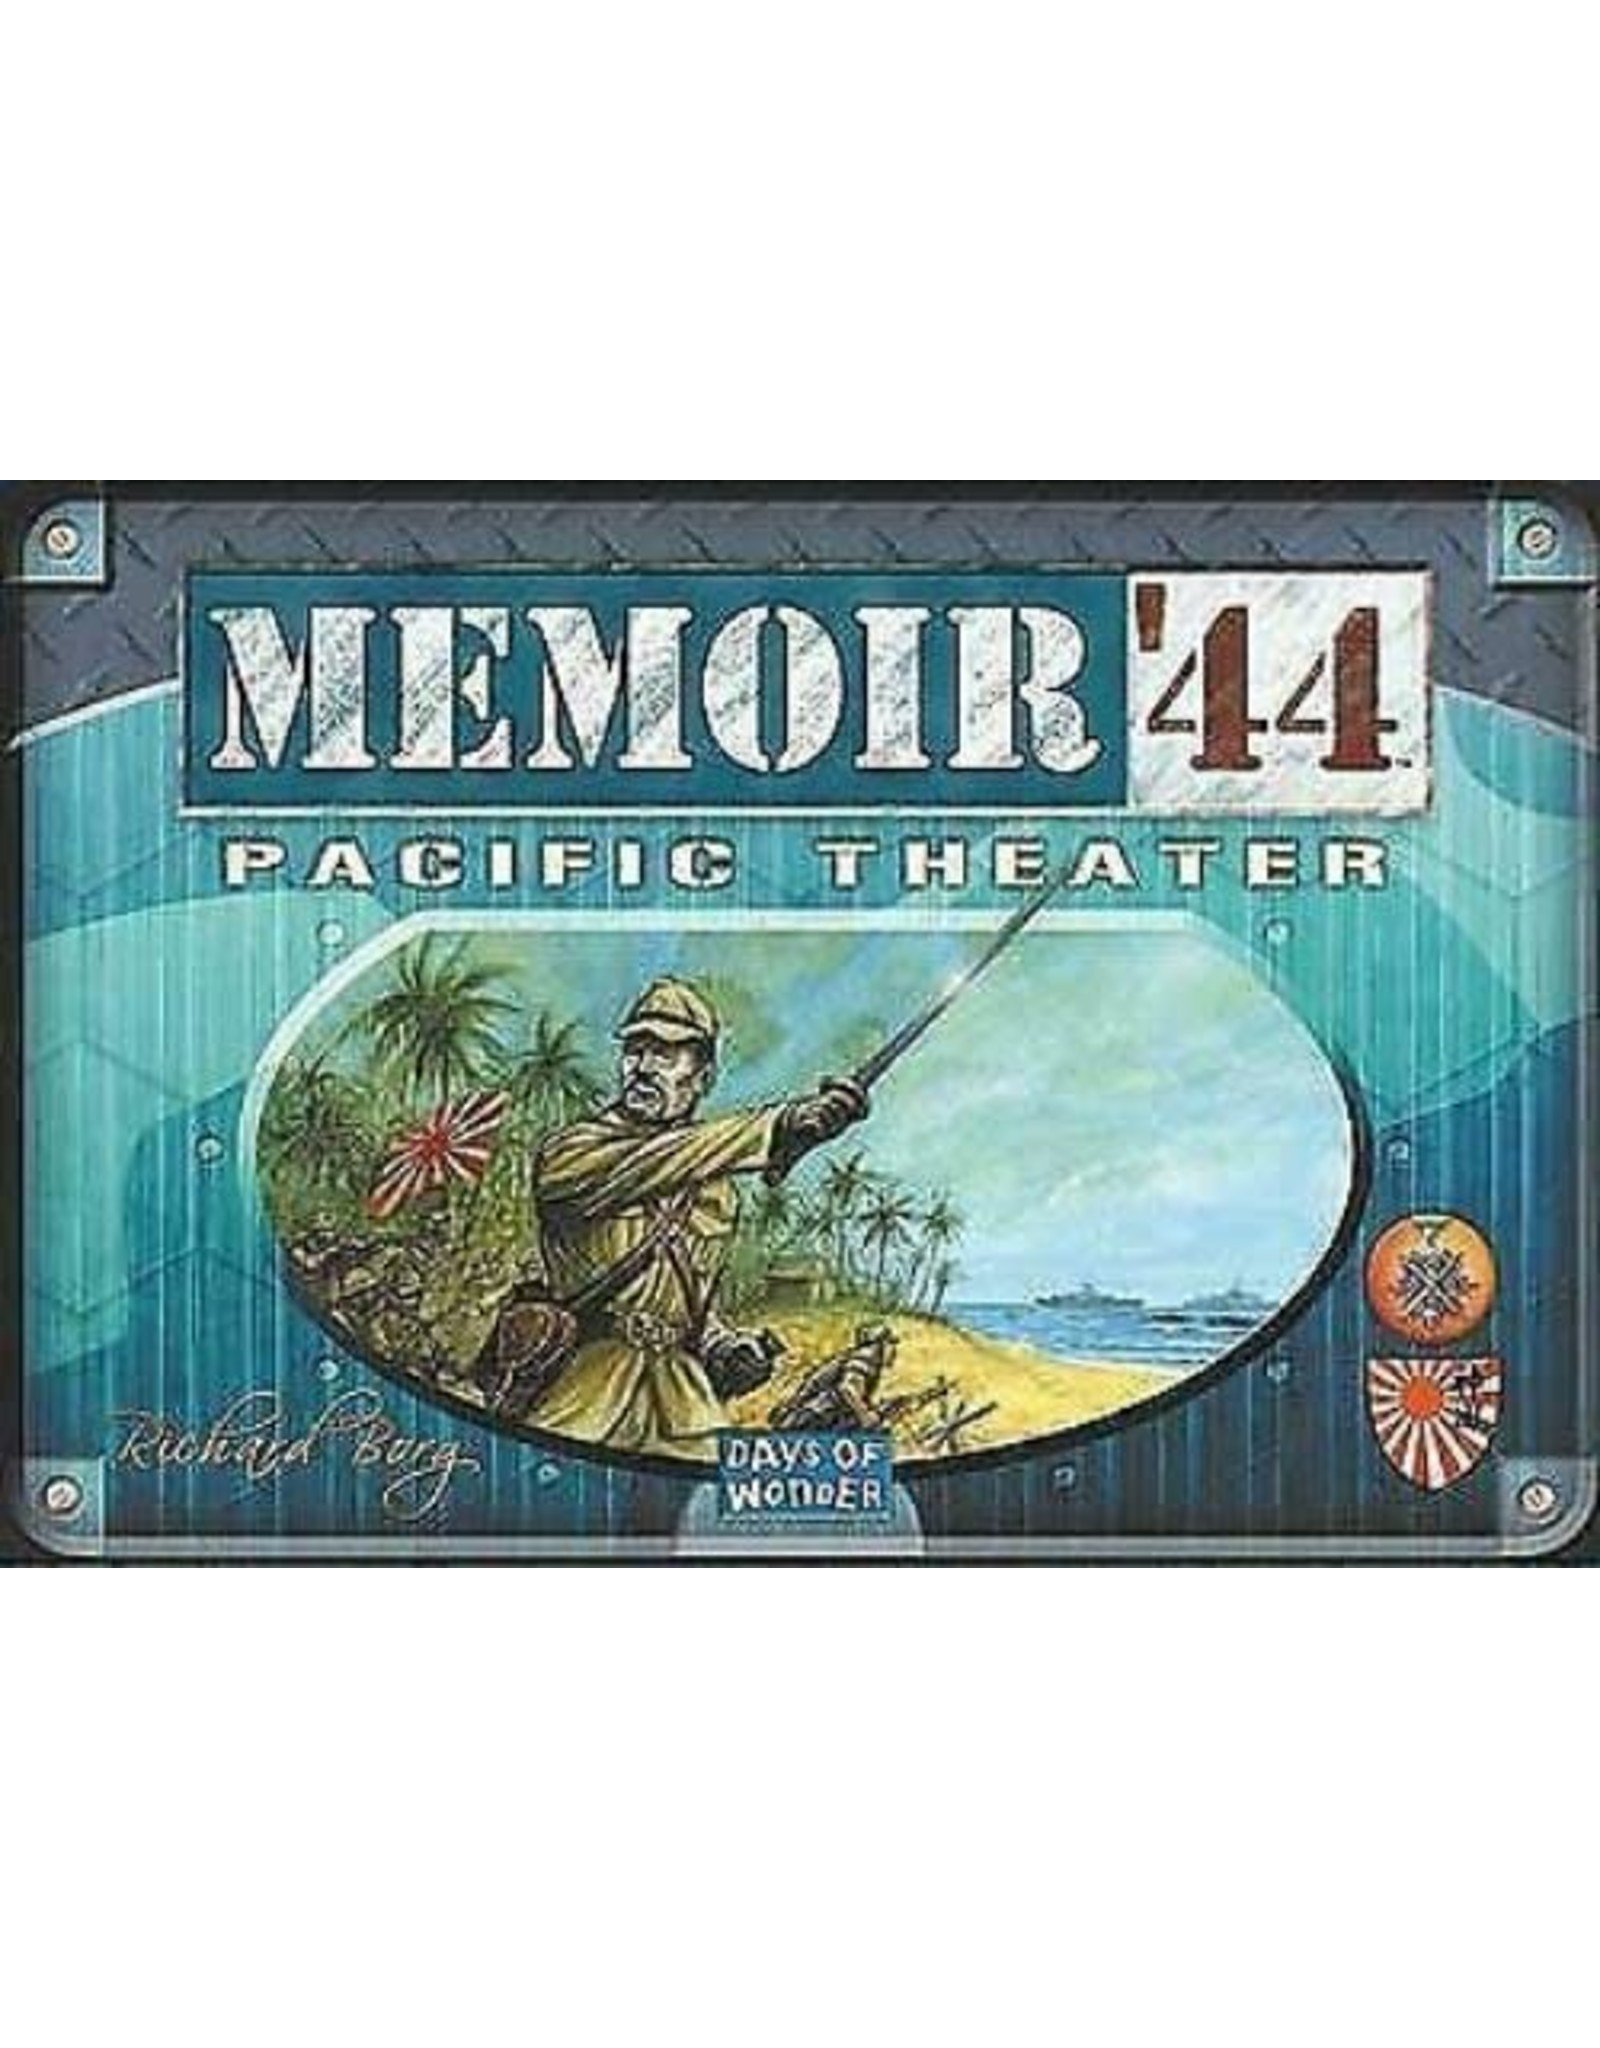 Memoir 44 Pacific Theater